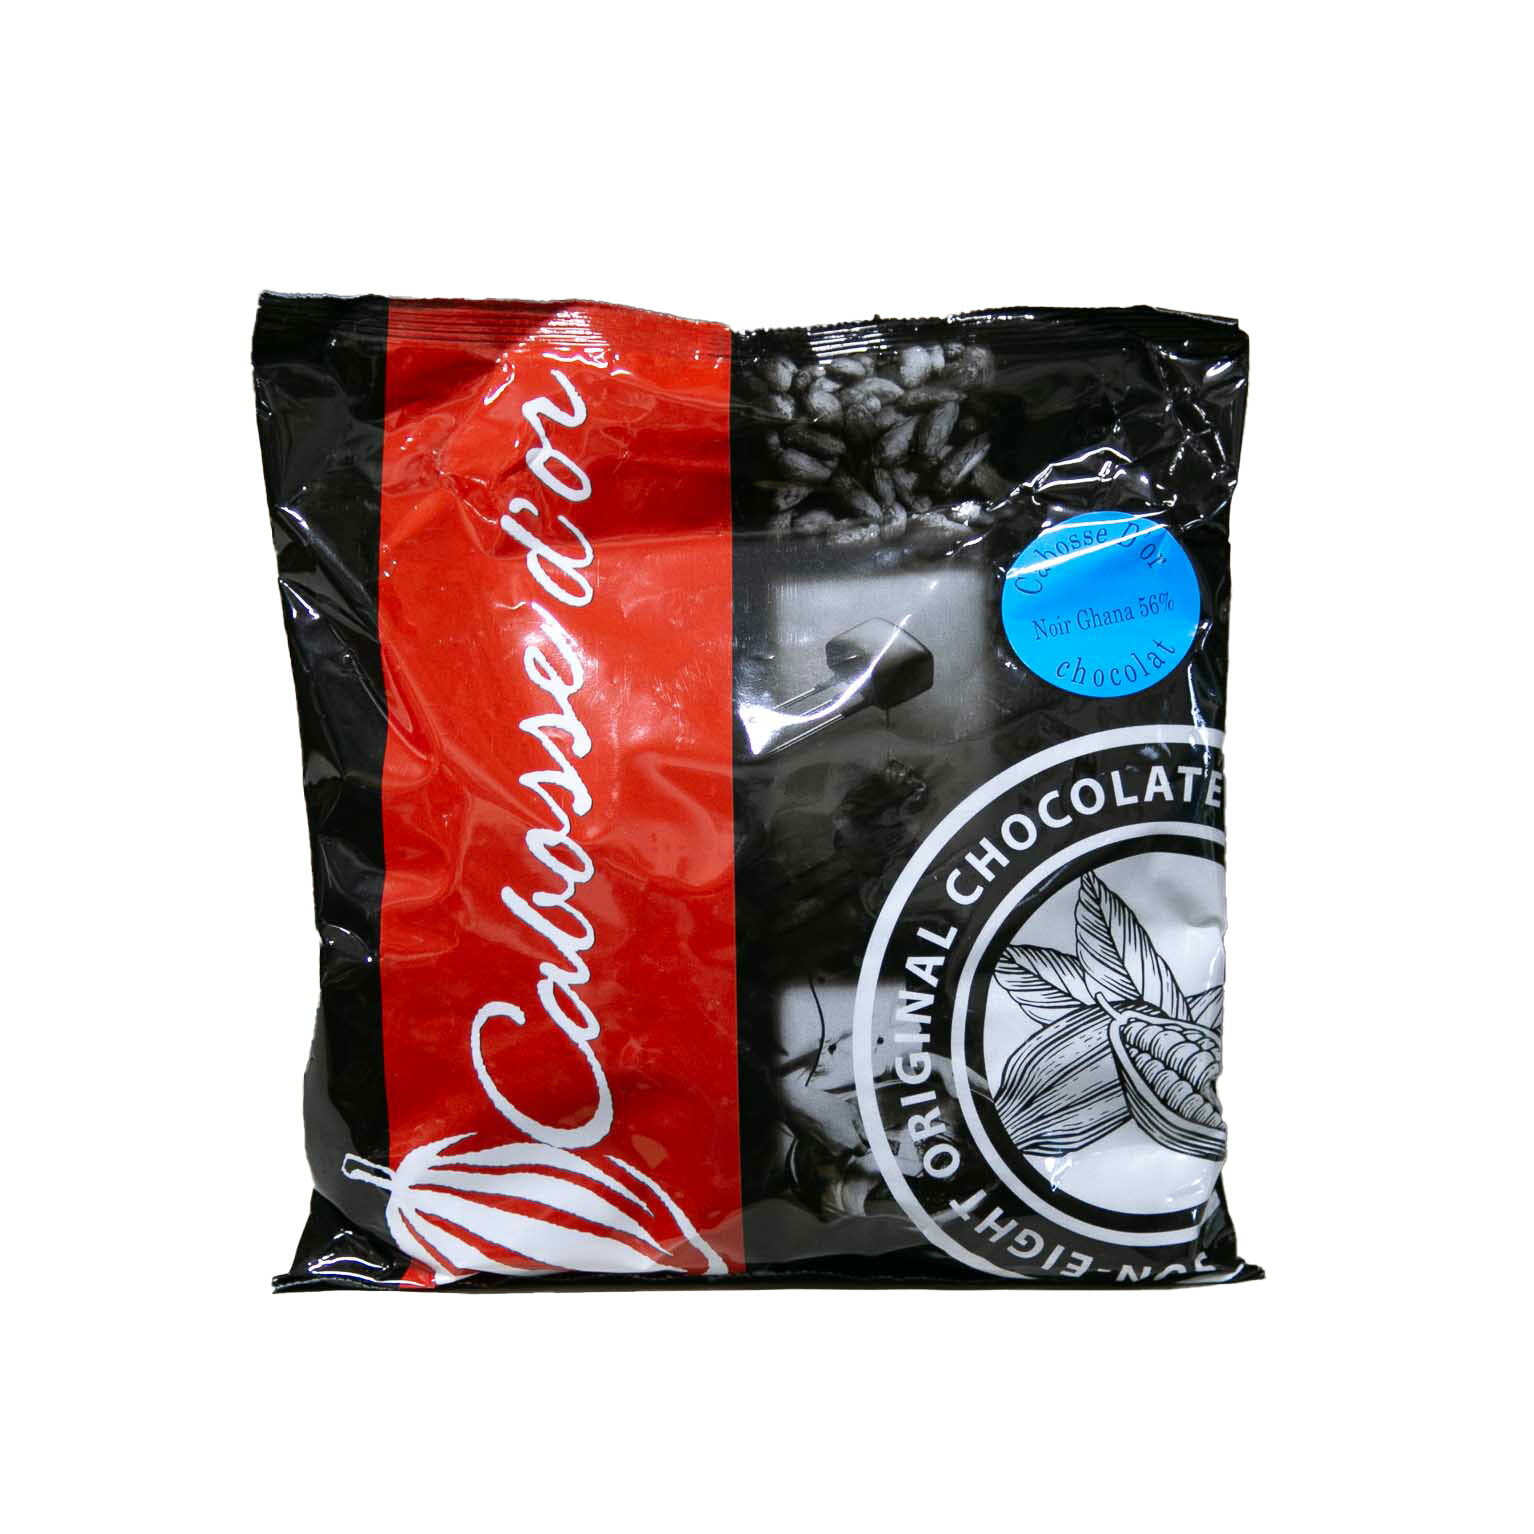 カボスドール ショコラノワール 56% ガーナ 1kg (夏季冷蔵) 手作りバレンタイン 業務用